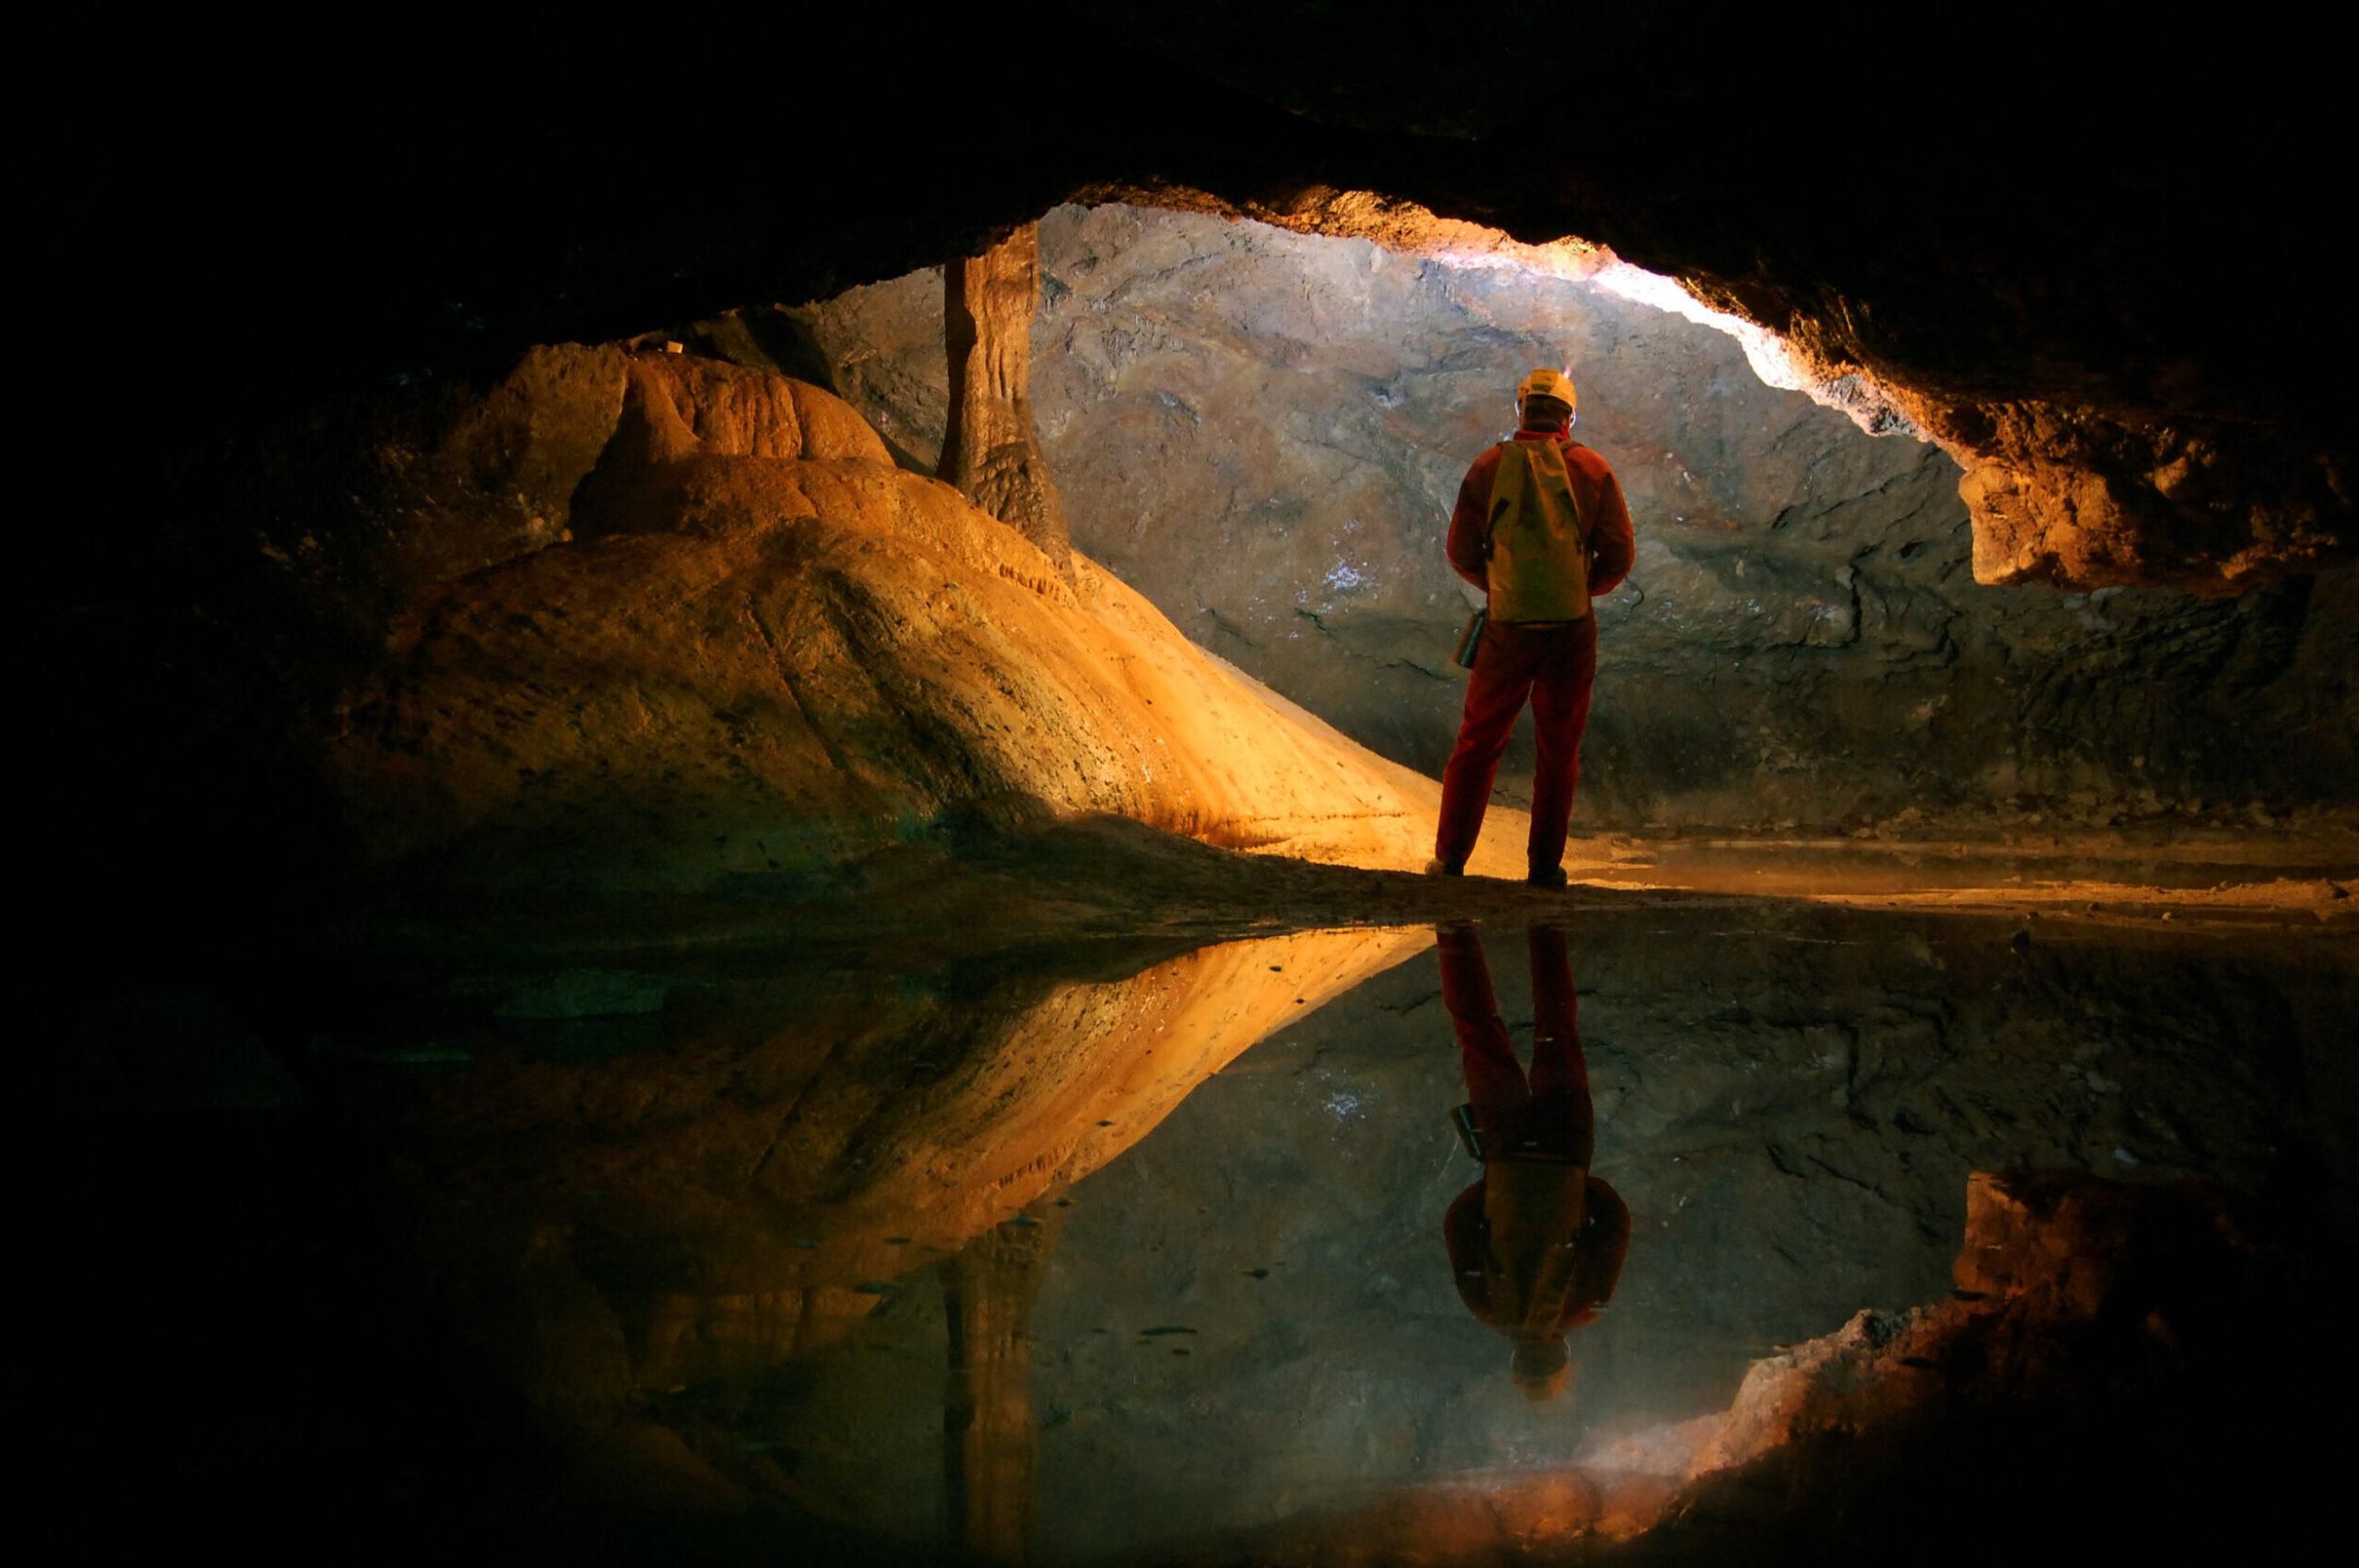 Показала пещере настоящую пещеру